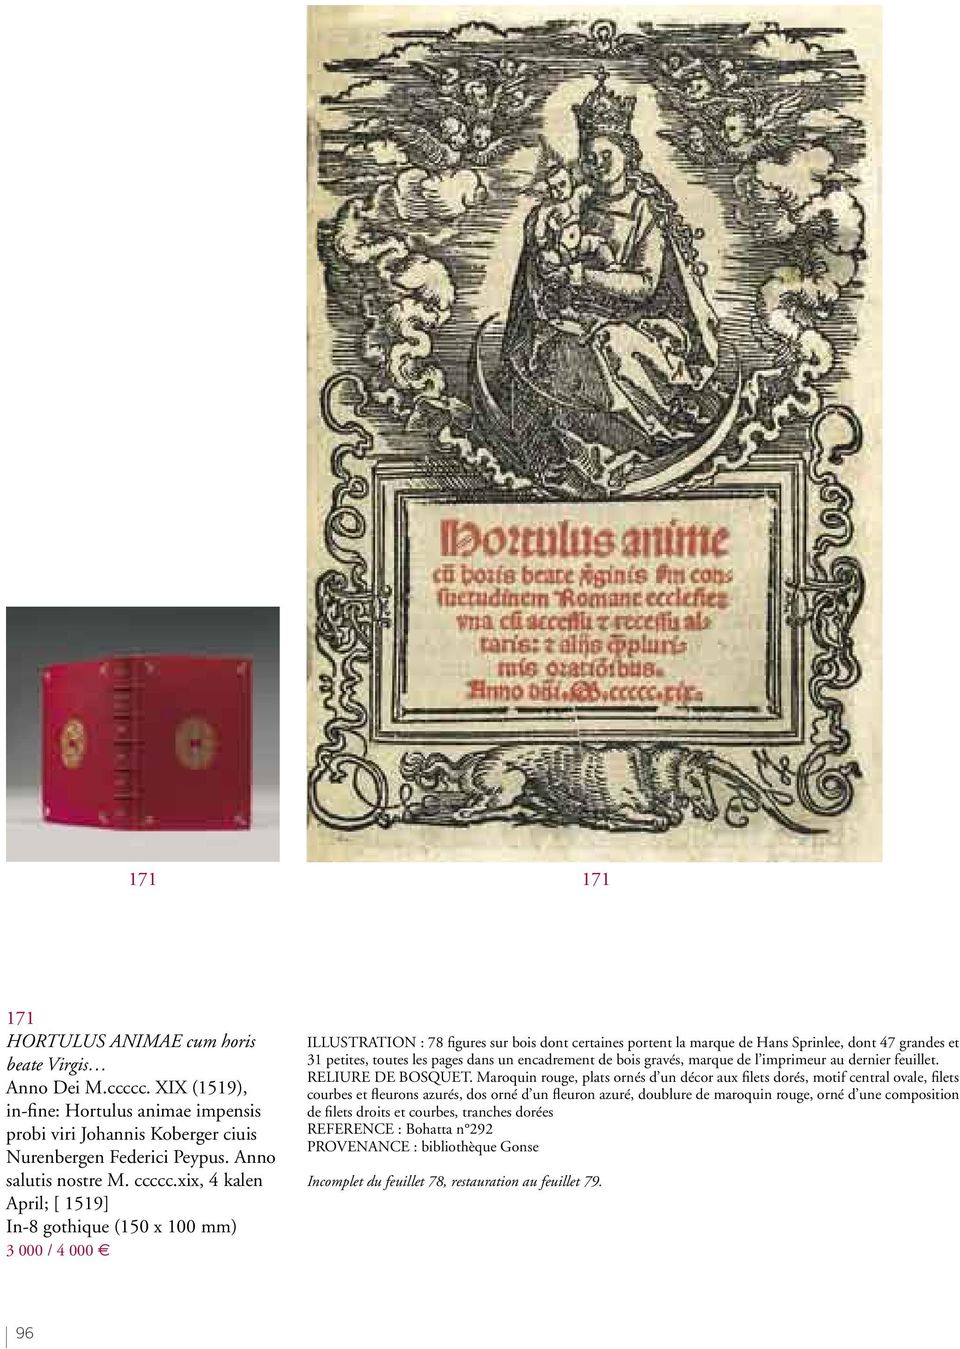 xix, 4 kalen April; [ 1519] In-8 gothique (150 x 100 mm) 3 000 / 4 000 ILLUSTRATION : 78 figures sur bois dont certaines portent la marque de Hans Sprinlee, dont 47 grandes et 31 petites, toutes les